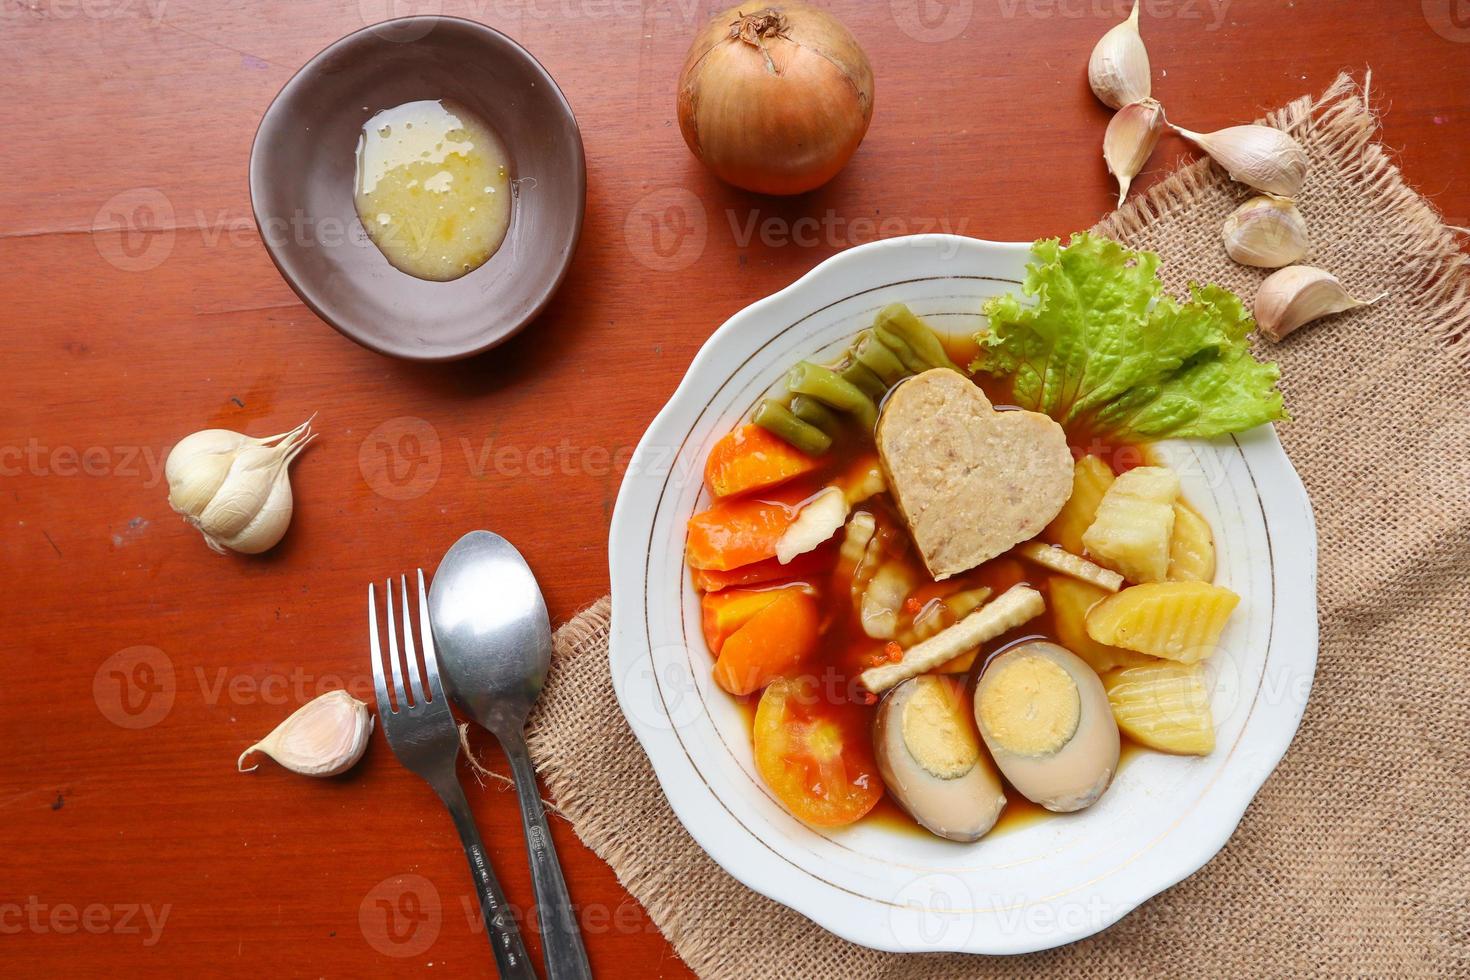 selat solo is traditioneel salade voedsel van Indonesië. gemaakt van hard gekookt eieren, gekookt kikkererwten, gekookt wortels, hasj bruin en sla, steak of bistik. geserveerd Aan hout tafel foto